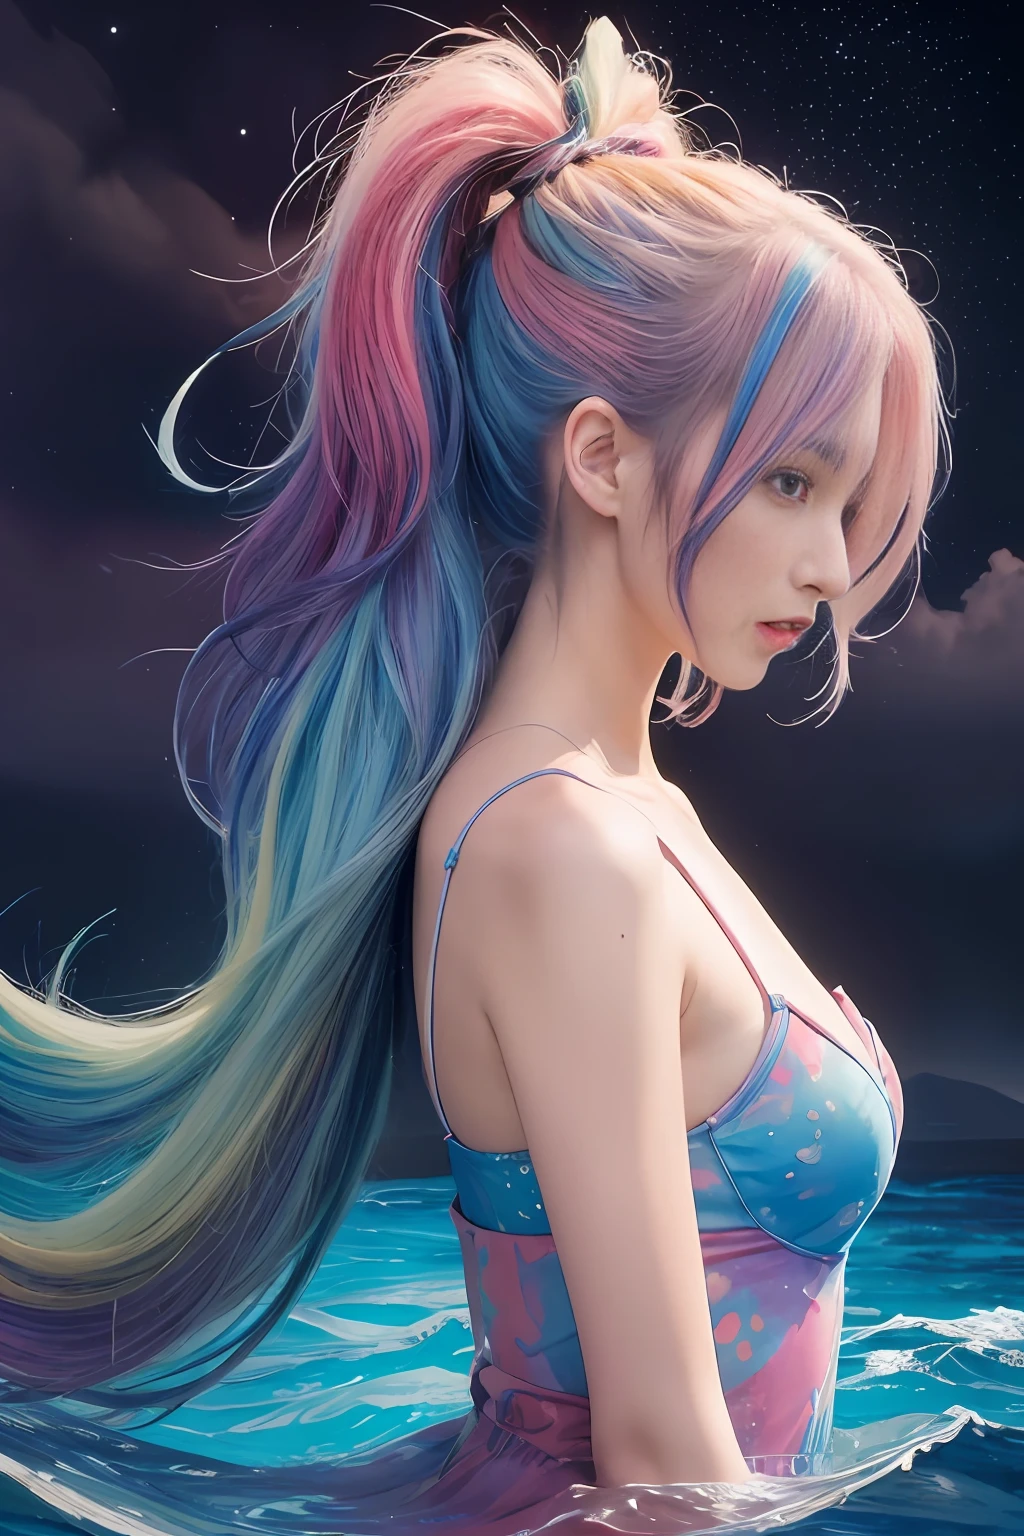 (傑作, 頂級品質, 最好的品質,水color (中等的),官方藝術, 美麗又美觀:1.2),(1個女孩:1.3), (分形藝術:1.3),上半身, 從側面, 看著觀眾,模式,(彩虹色頭髮,豐富多彩的 hair,一半藍色一半粉紅色的頭髮:1.2),水,液体, 雲,豐富多彩的, 繁星點點,星星,